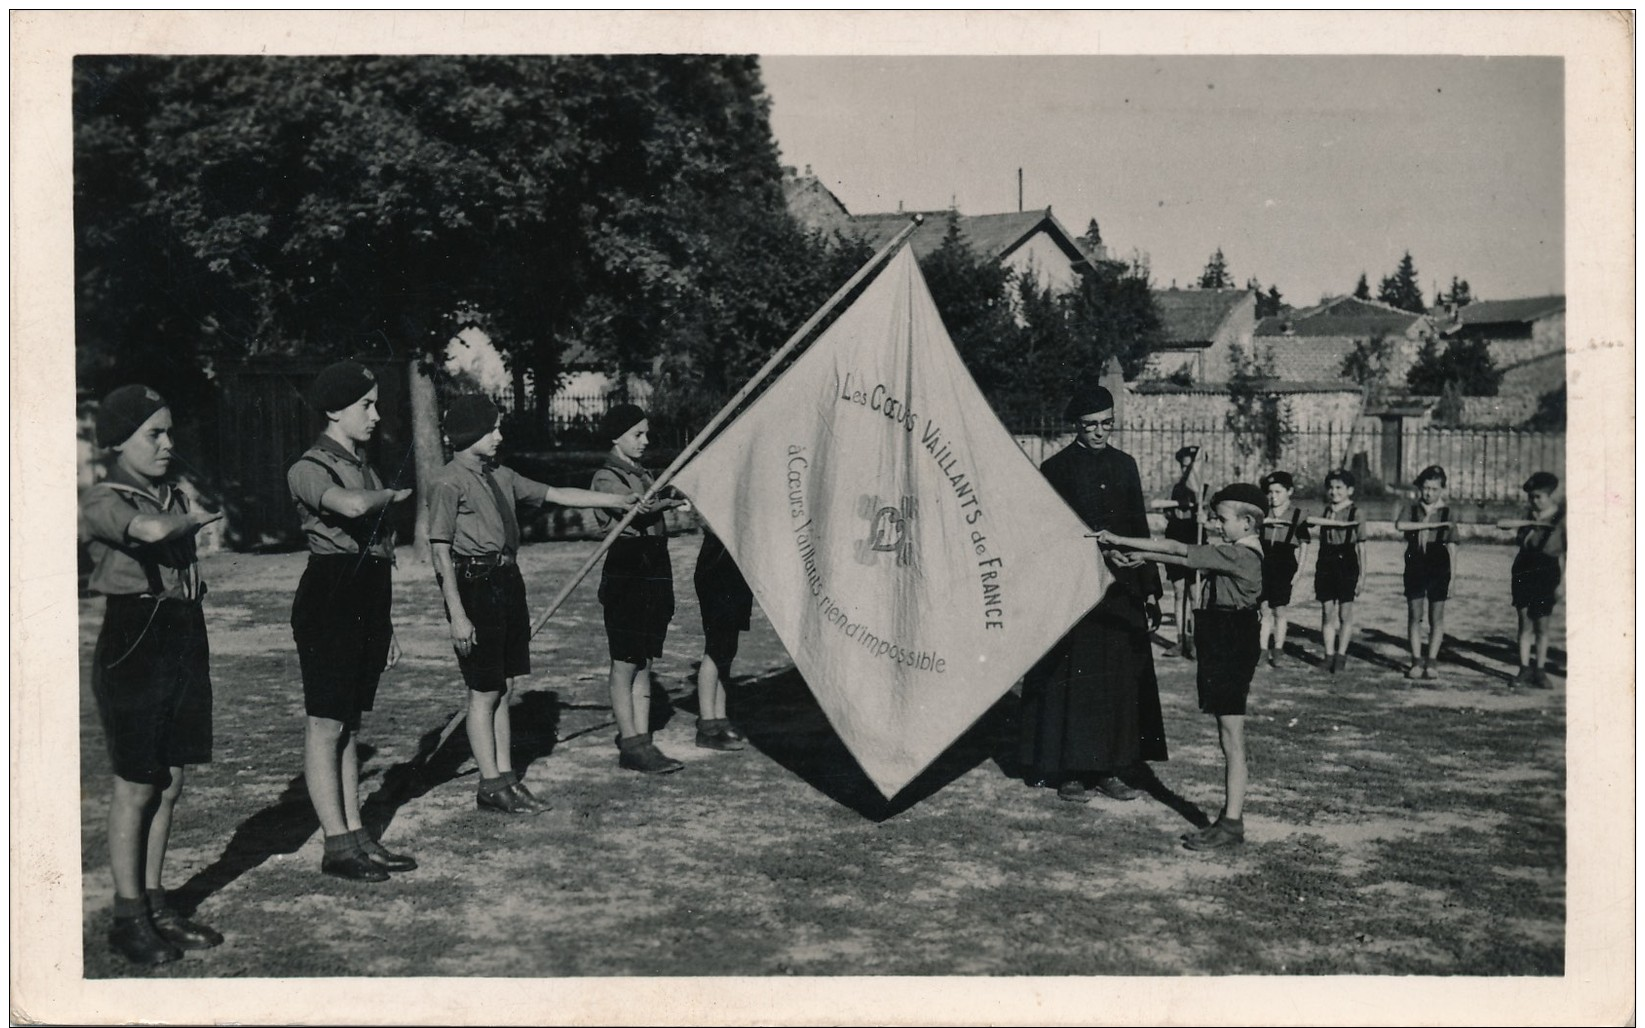 H121 - SCOUTISME - Coeurs Vaillants - St-Jacques Des Etats Unis - Lyon - Promesse De Croix Bleue - Août 1944 - Scouting